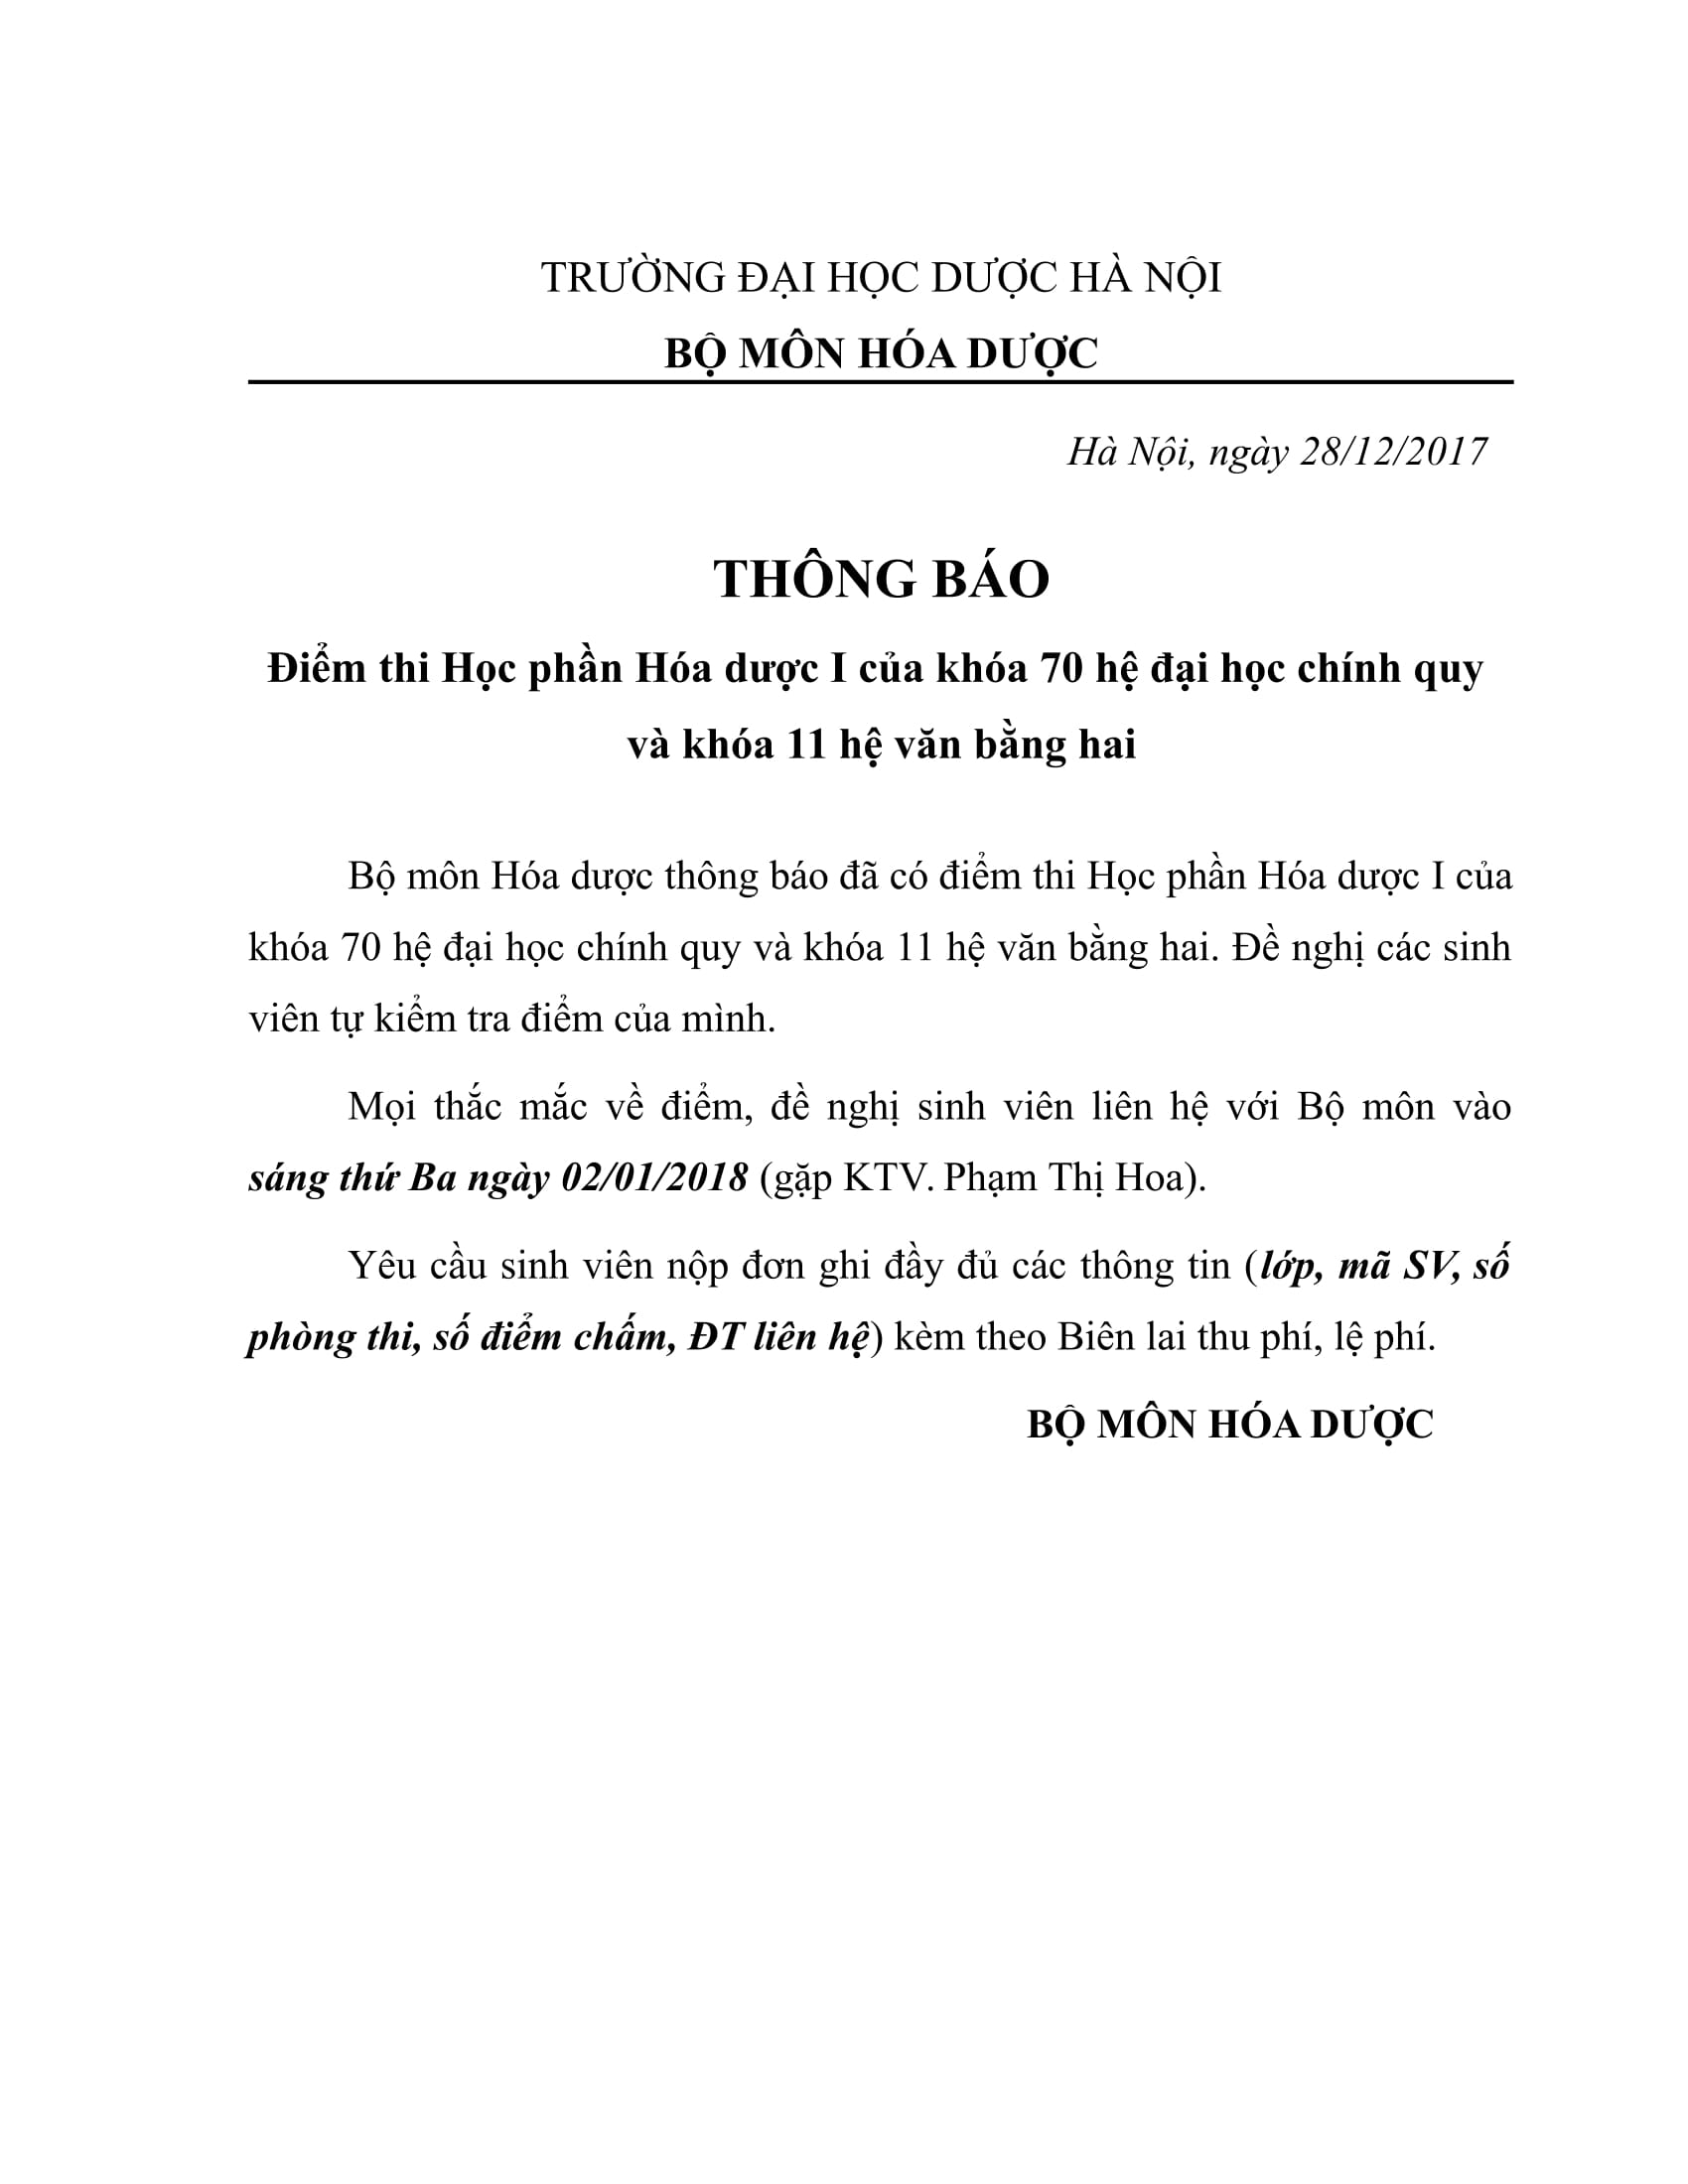 THONG BAO diem thi-1.jpg